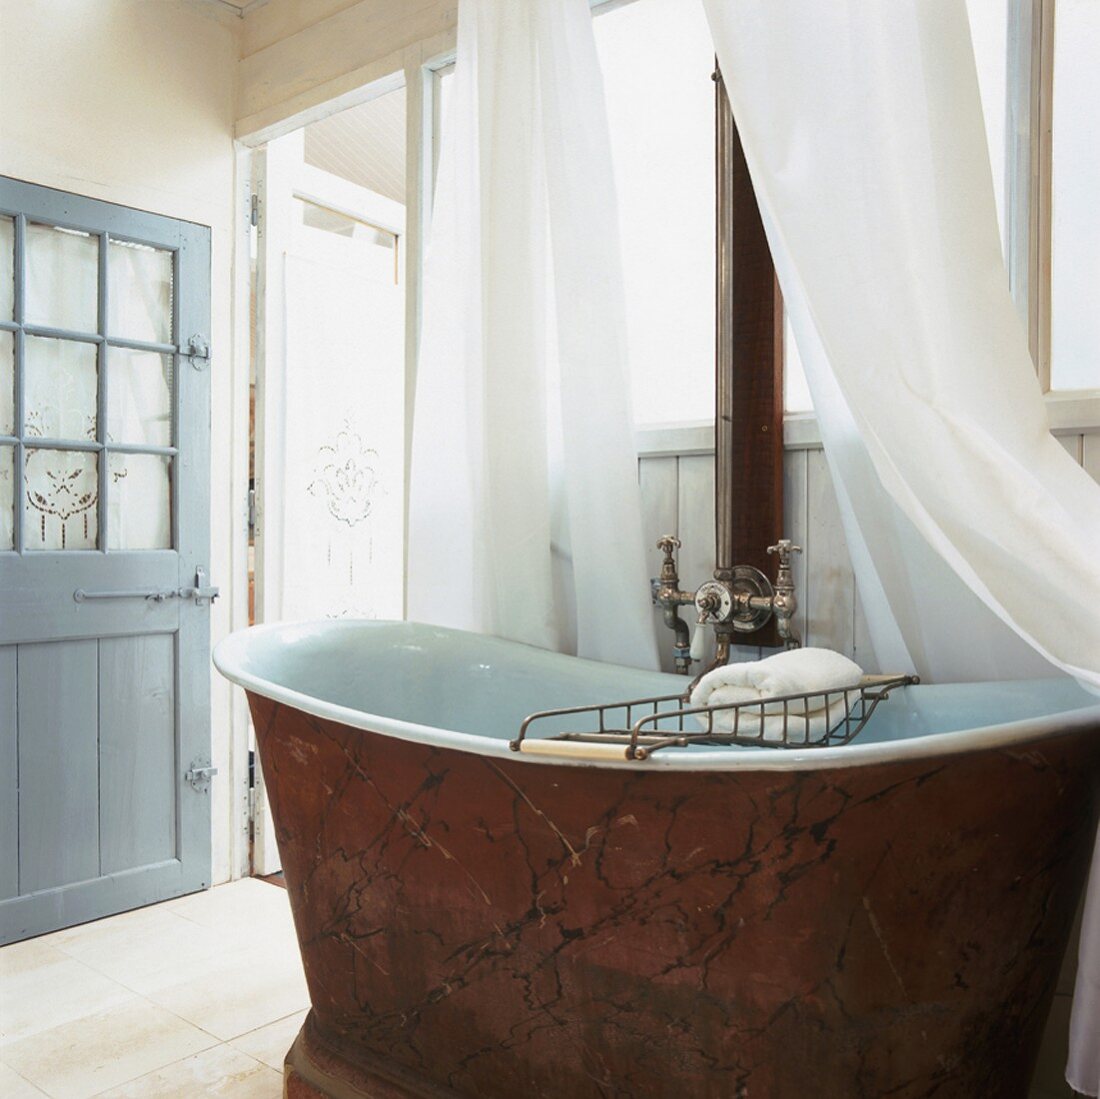 Antike Badewanne aus rotem Marmor in einem holzvertäfelten Badezimmer mit Fensterwand